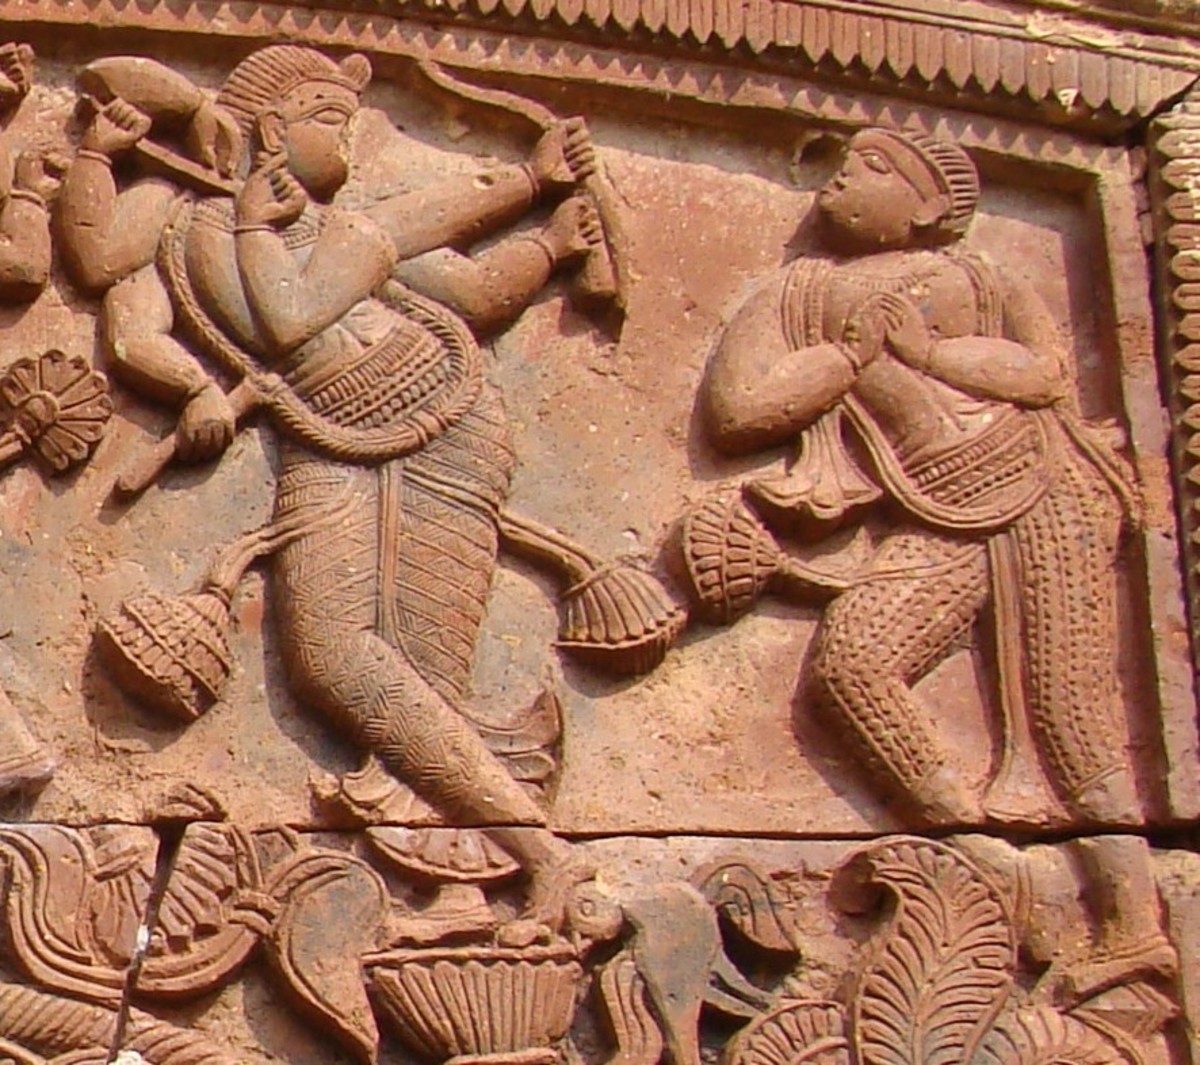 Shadbhuja Gauranga in stone; Shiva temple, Ganpur, district Birbhum